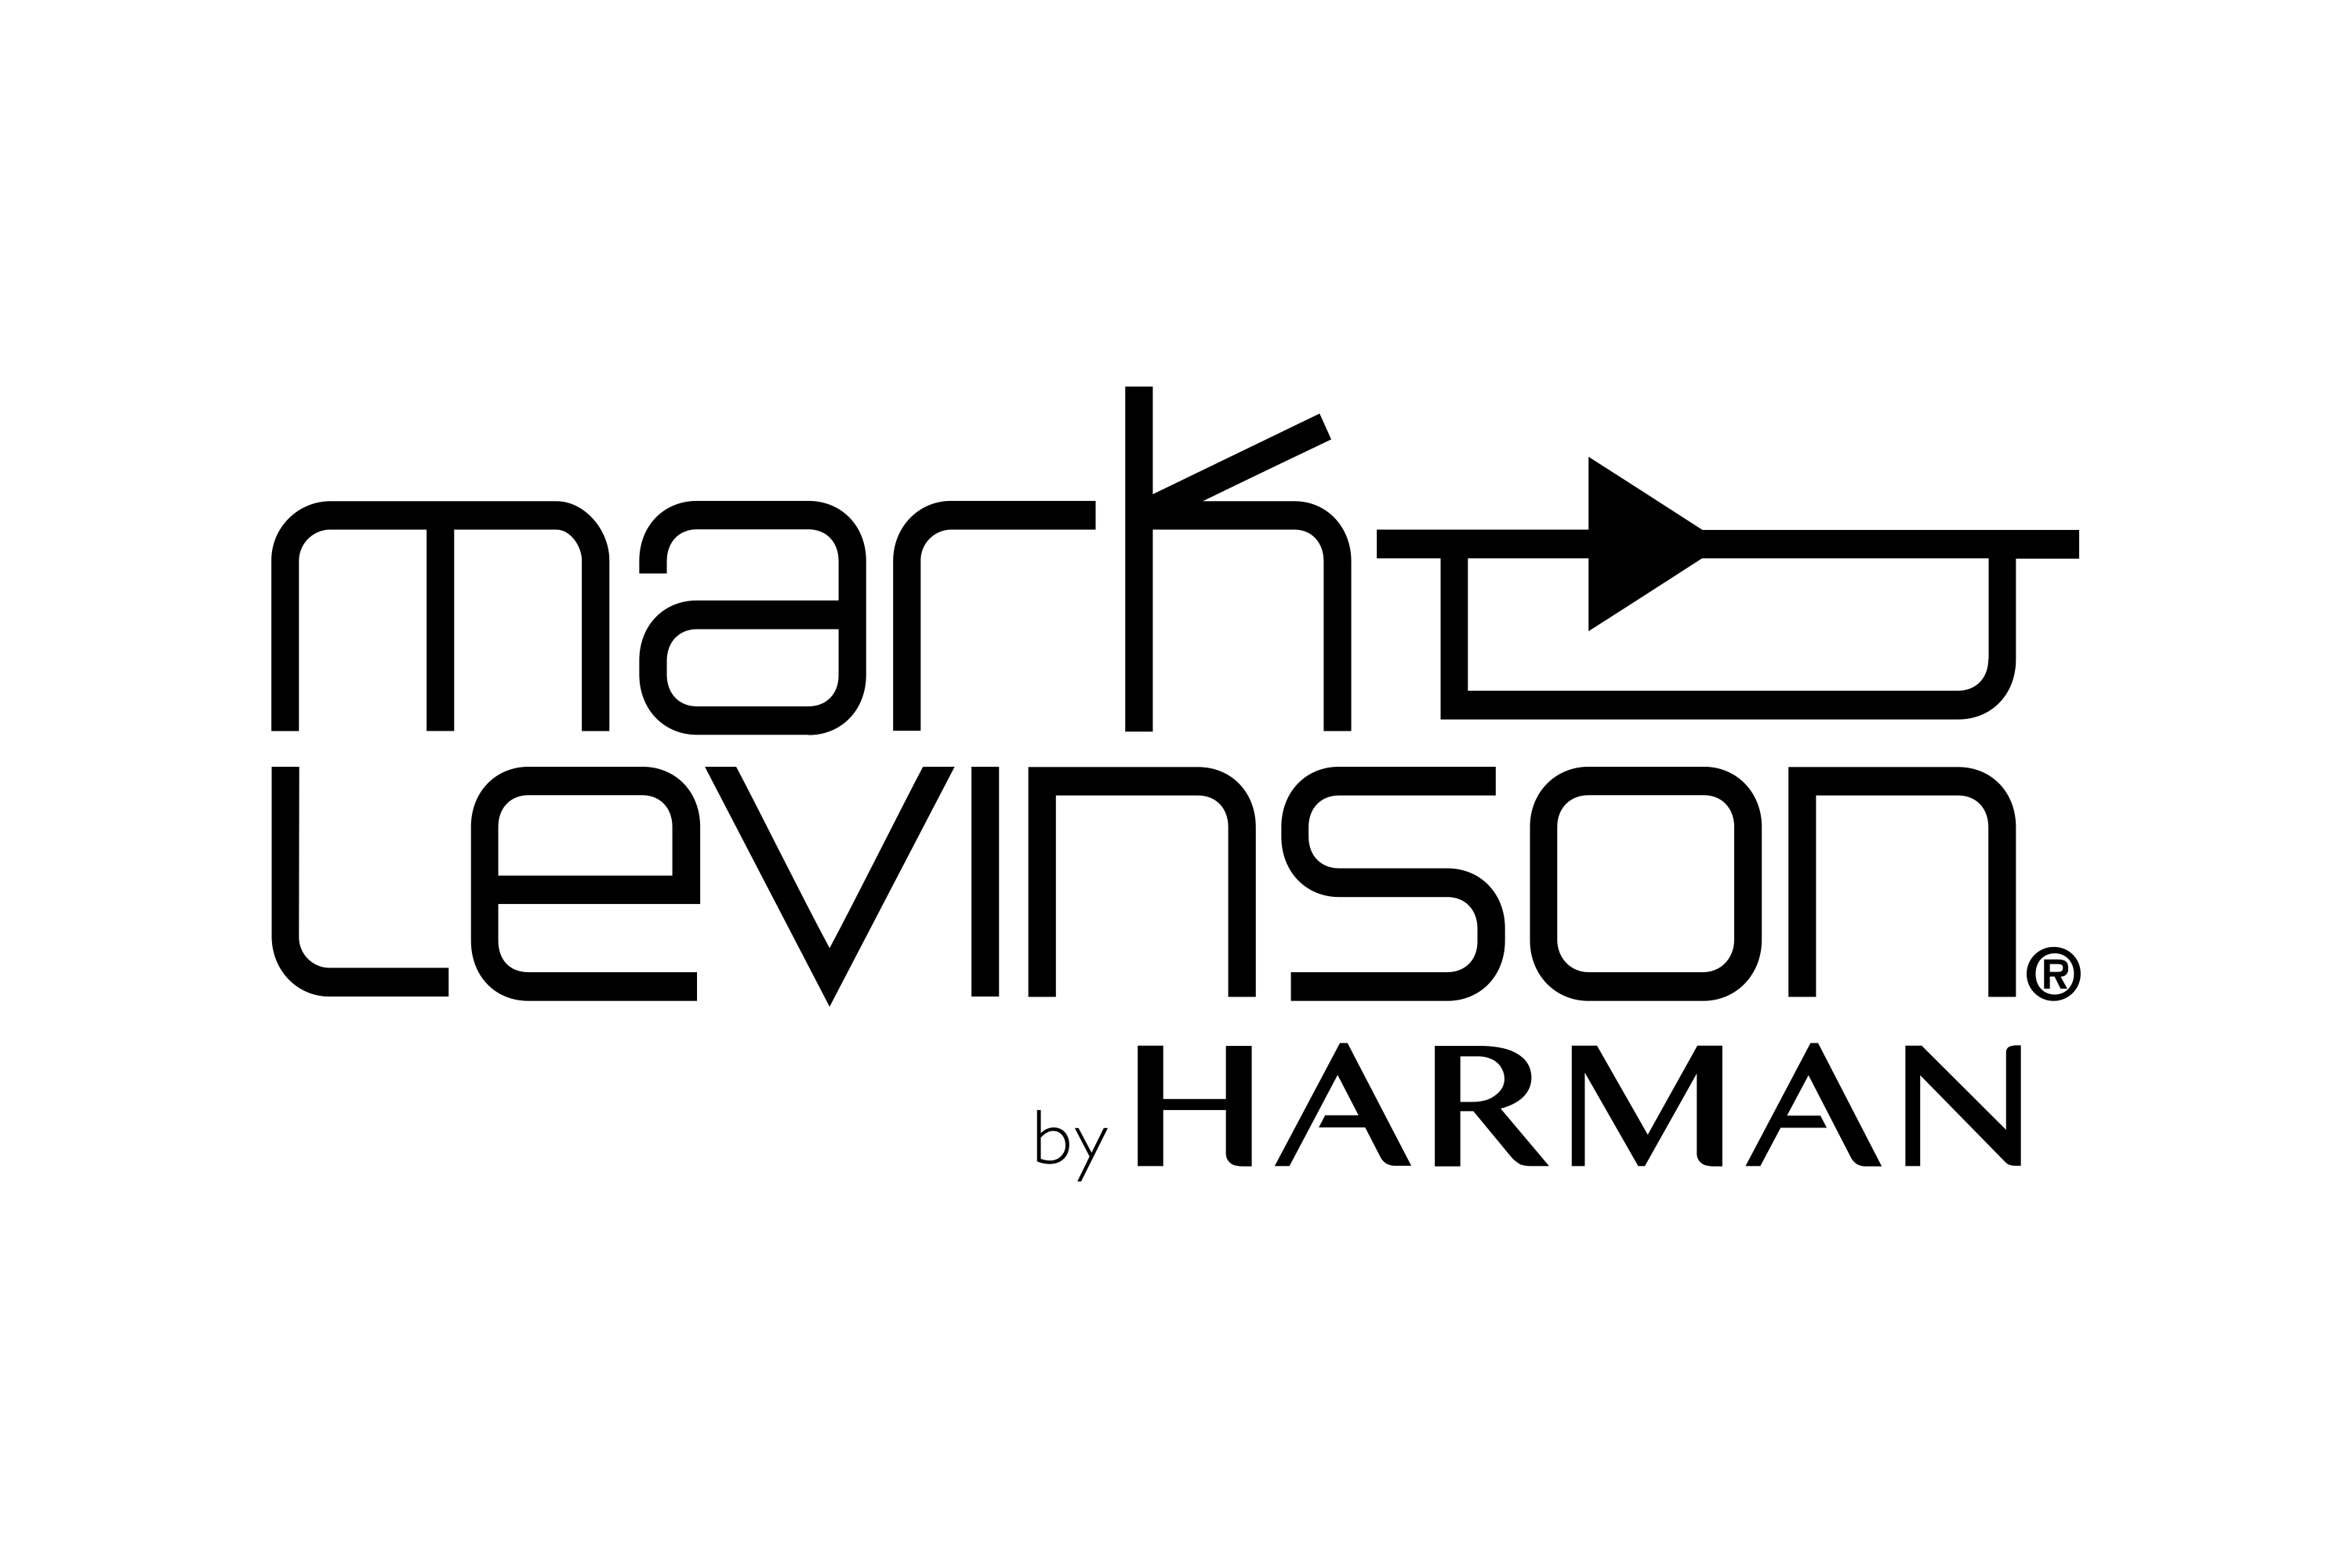 Download Mark Levinson Logo in SVG Vector or PNG File Format - Logo.wine